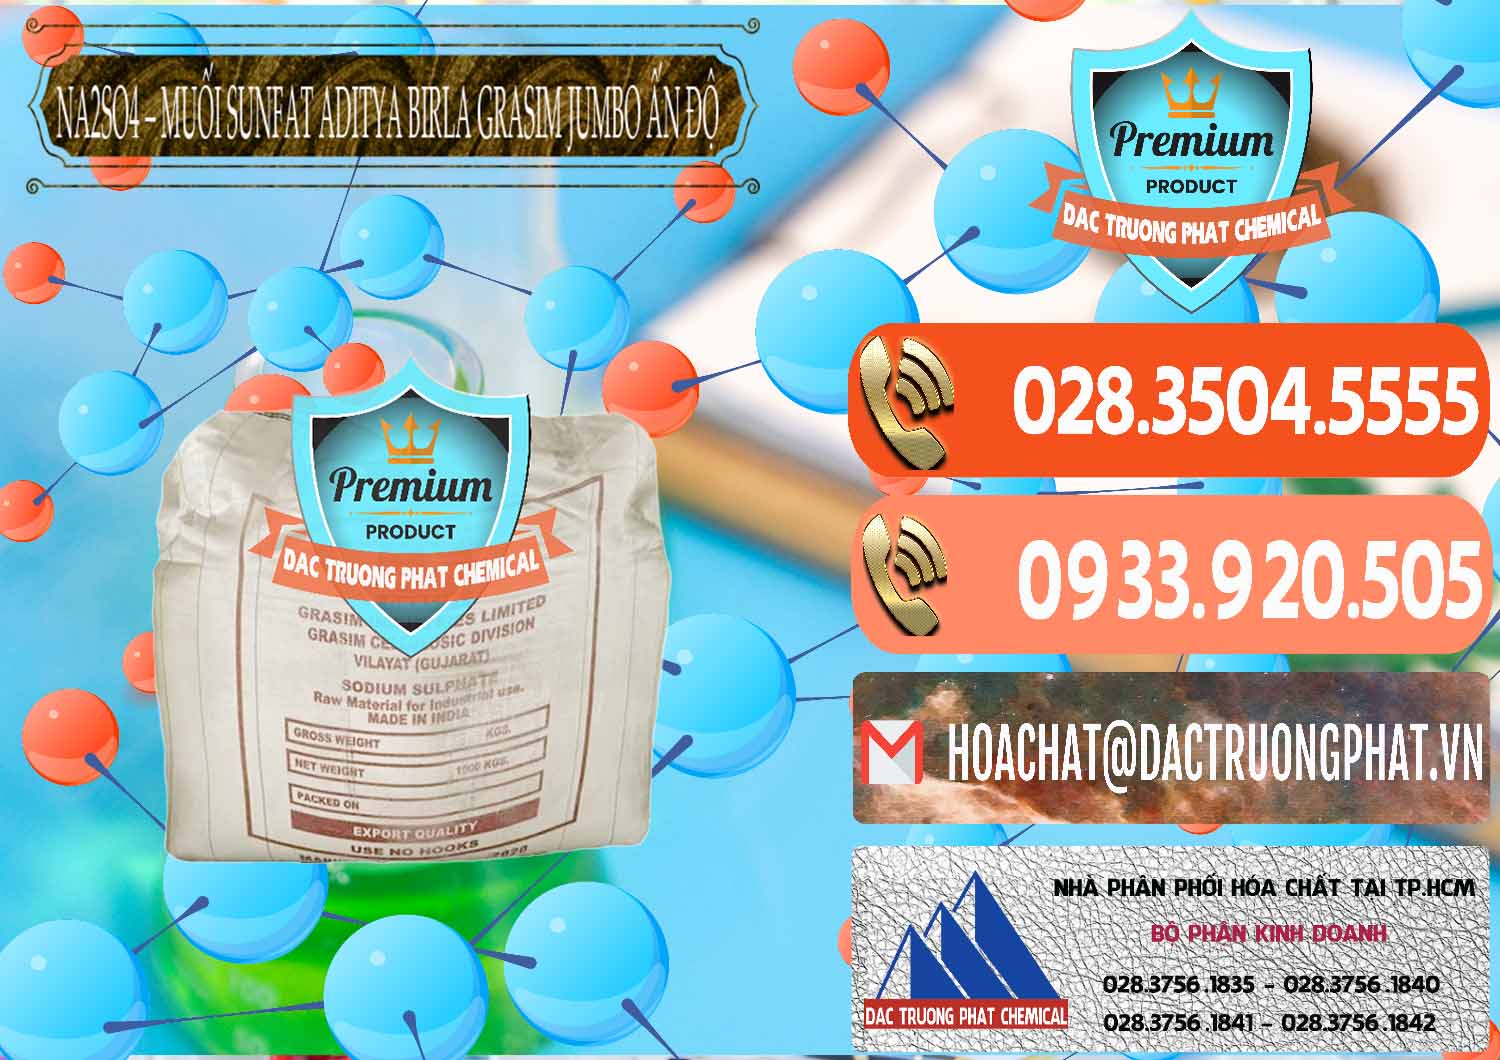 Cty cung ứng & bán Sodium Sulphate - Muối Sunfat Na2SO4 Jumbo Bành Aditya Birla Grasim Ấn Độ India - 0357 - Nơi cung cấp _ nhập khẩu hóa chất tại TP.HCM - hoachatmientay.com